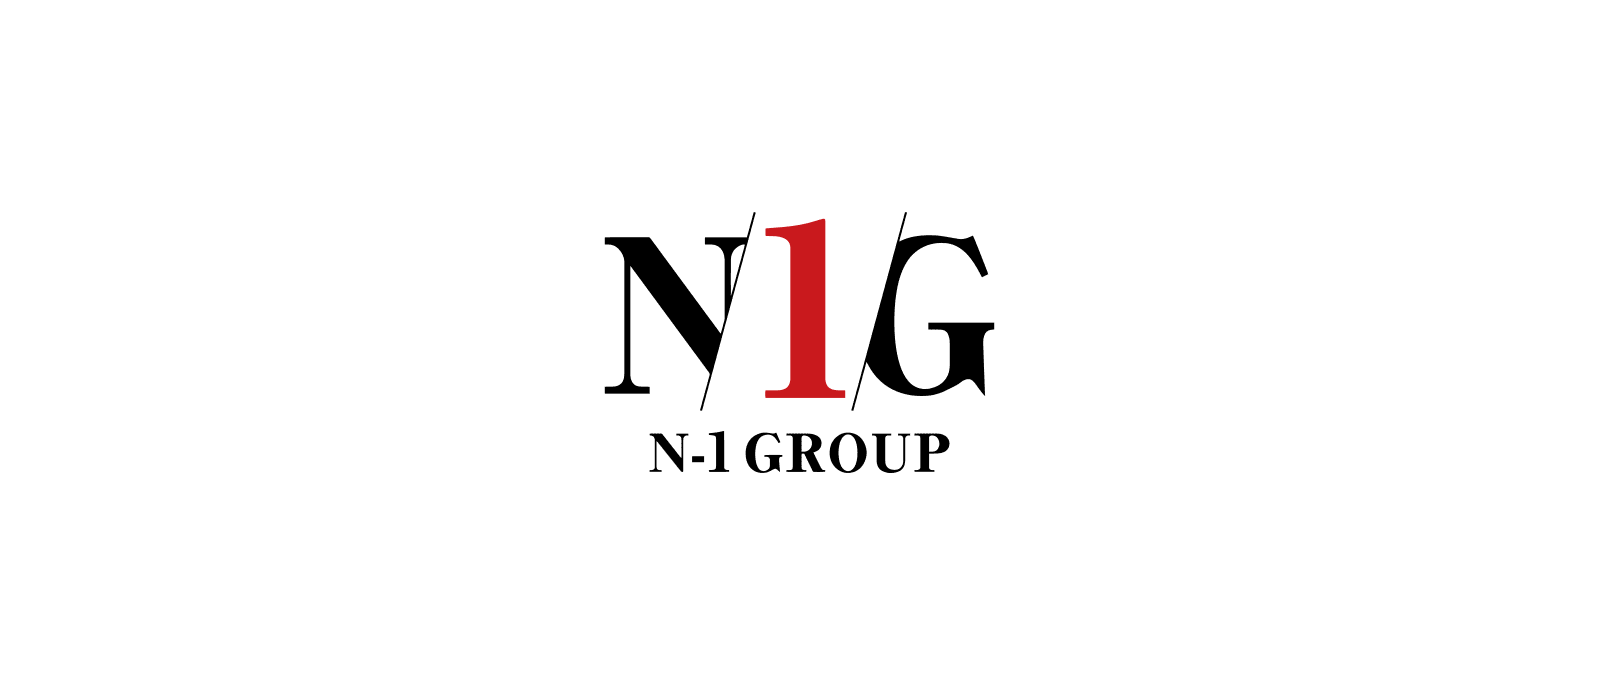 N-1 GROUP